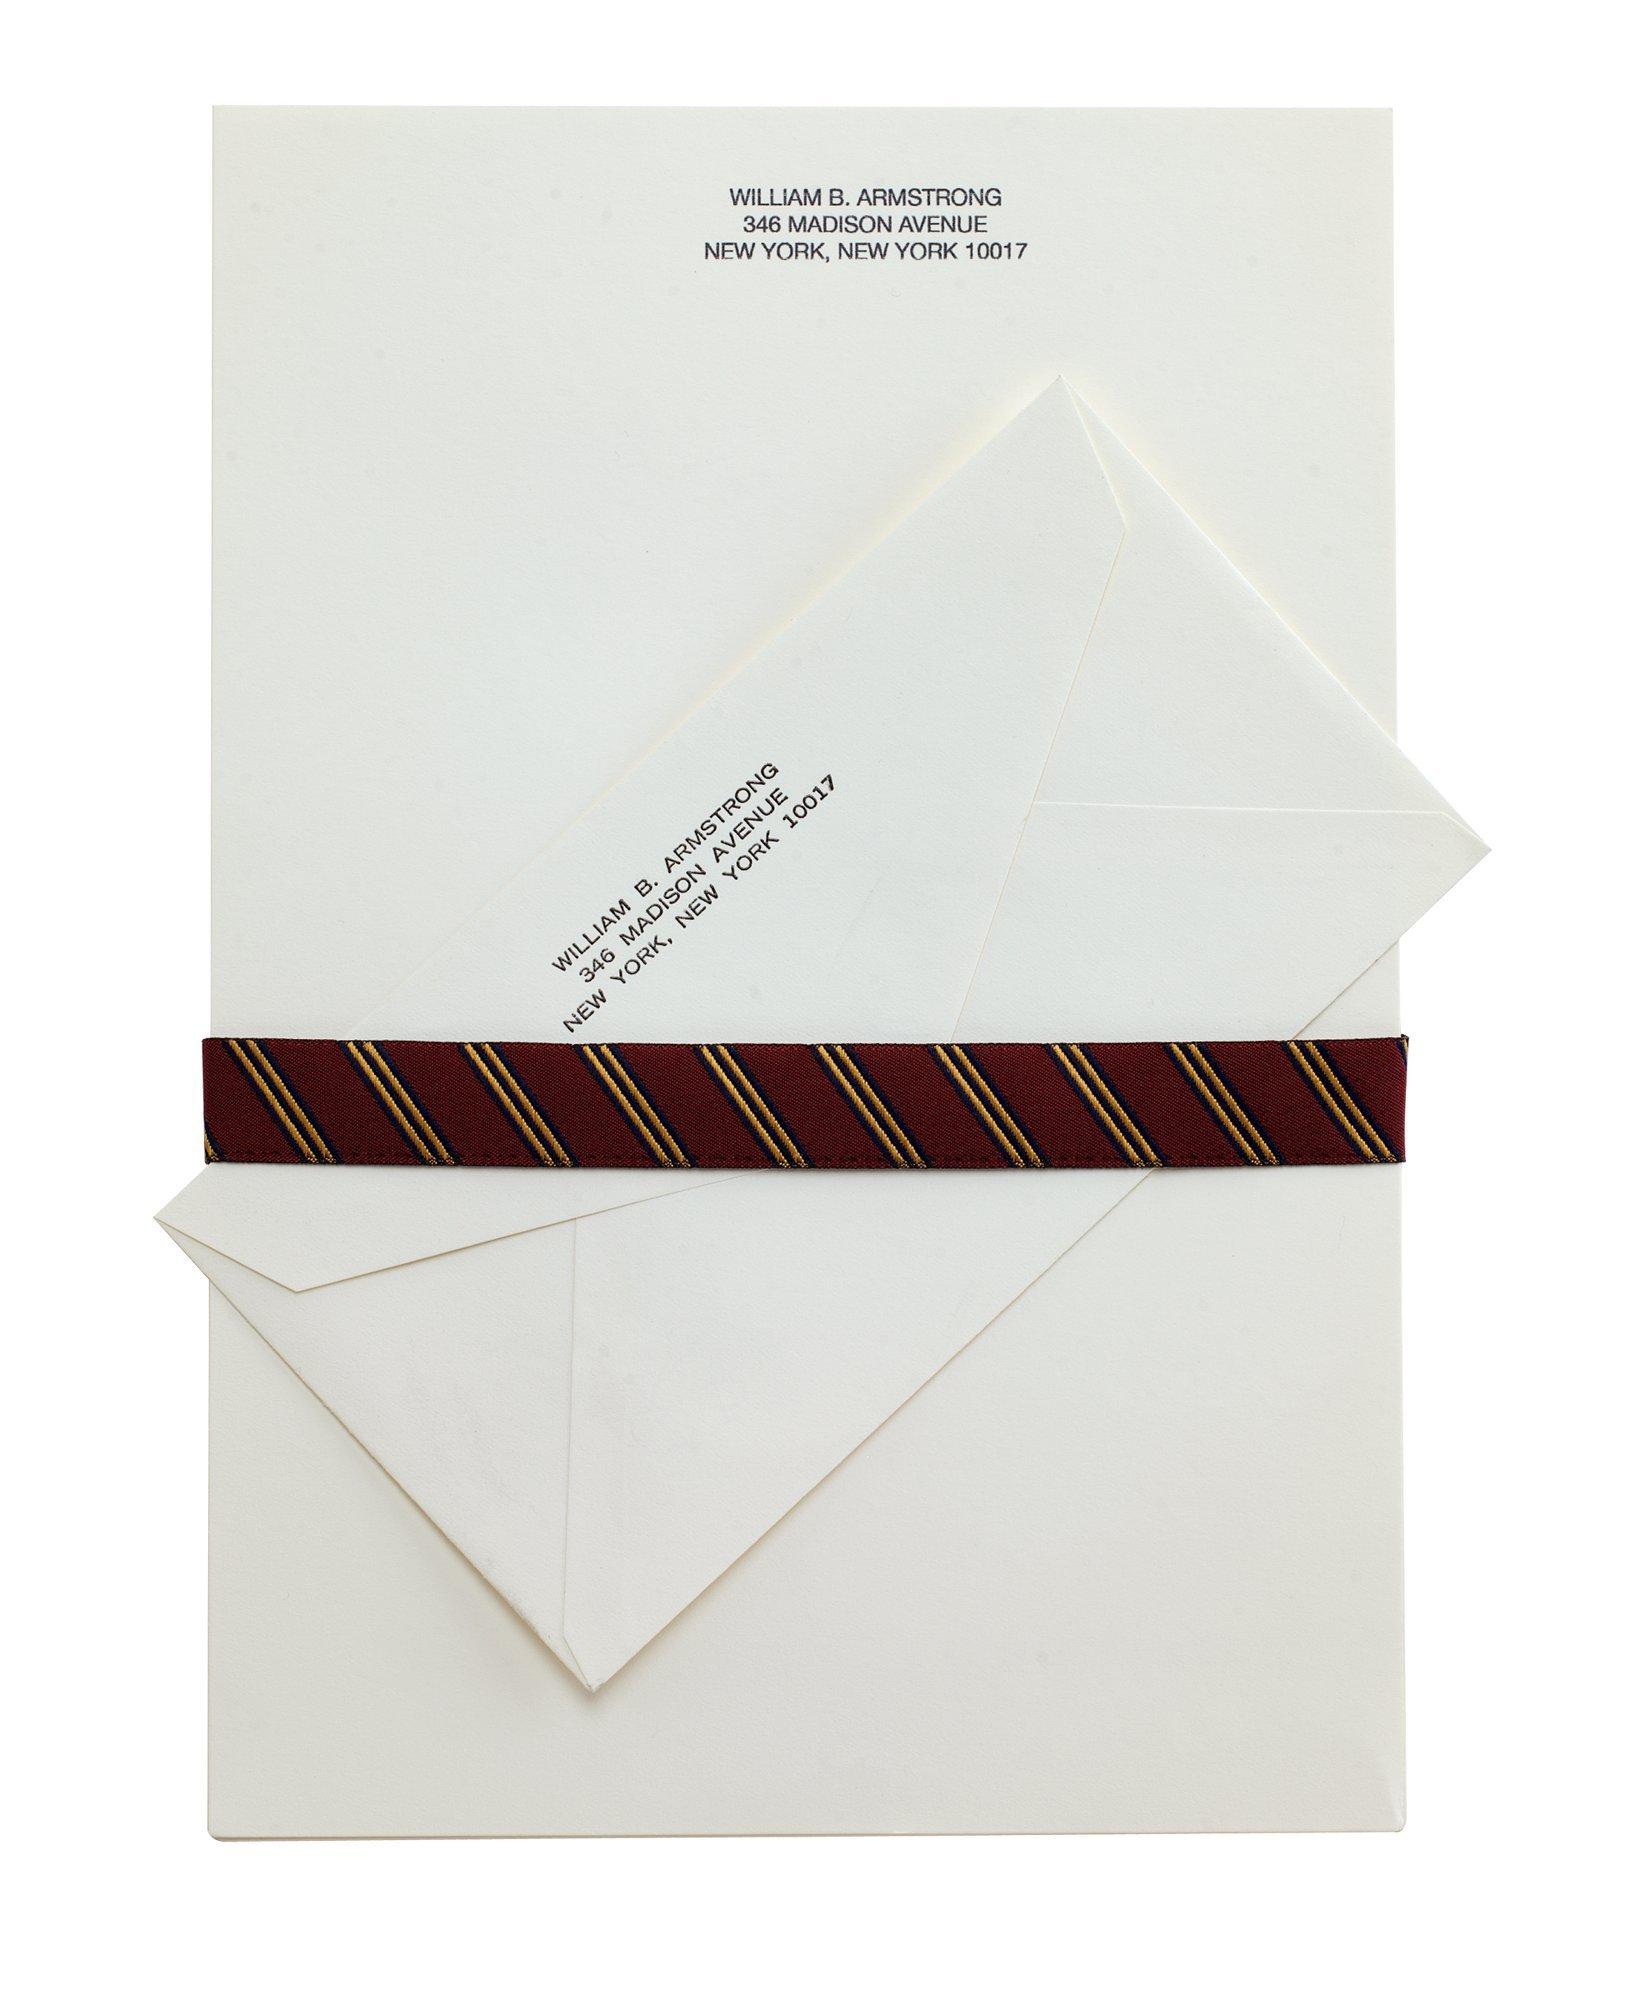 Executive Stationery - 100 Sheets & Envelopes, image 1